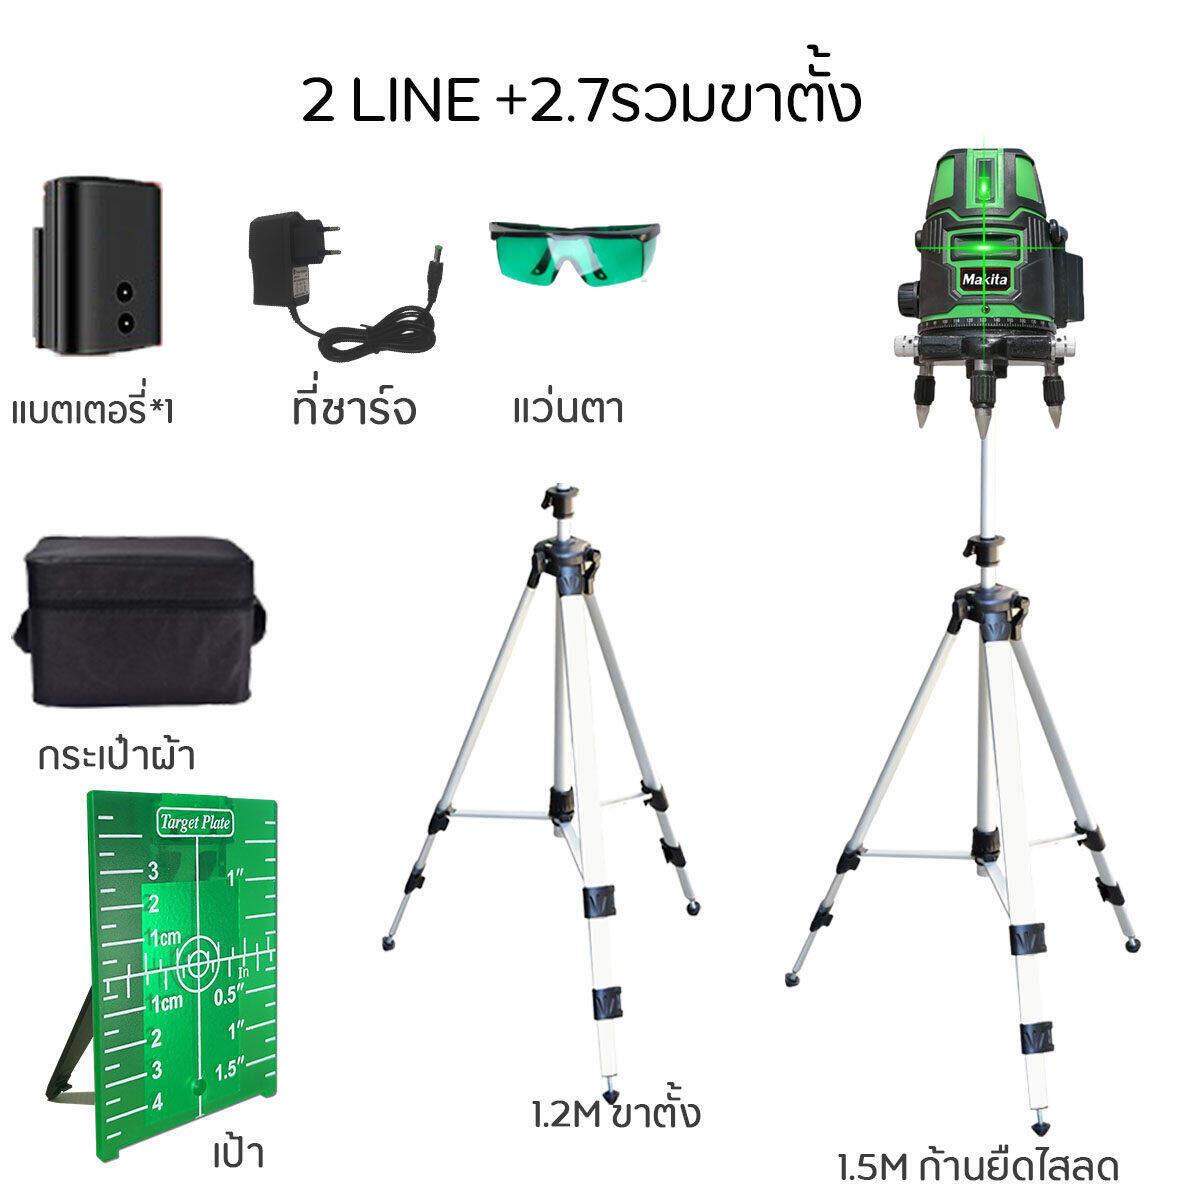 รายละเอียดเพิ่มเติมเกี่ยวกับ Makita【2/5/12 Lines Green Laser Level】แถม แว่นตา + กล่อง เครื่องวัดระดับเลเซอร์ เลเซอร์ 3 มิติ 12 แกน ระดับน้ำเลเซอร์ 360 องศา กล่องกันกระแทกอย่างดี